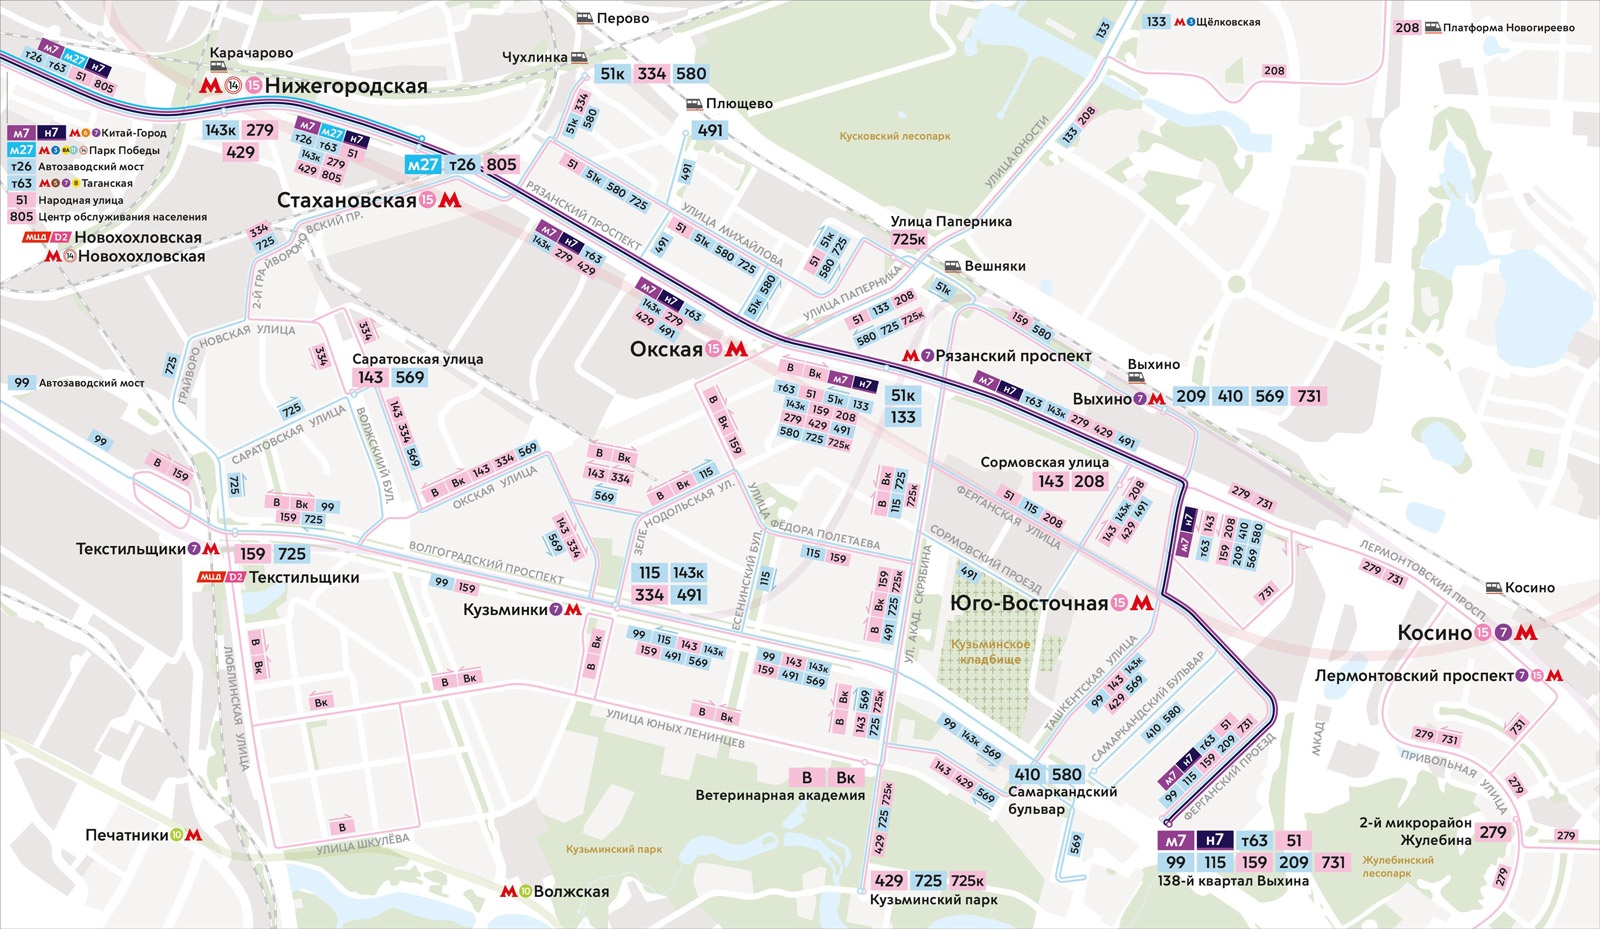 7 9 от пр. Красносельский район Москвы на карте. Карта маршрута автобуса. Автобусные остановки на карте. Автобусные маршруты Москвы на карте.